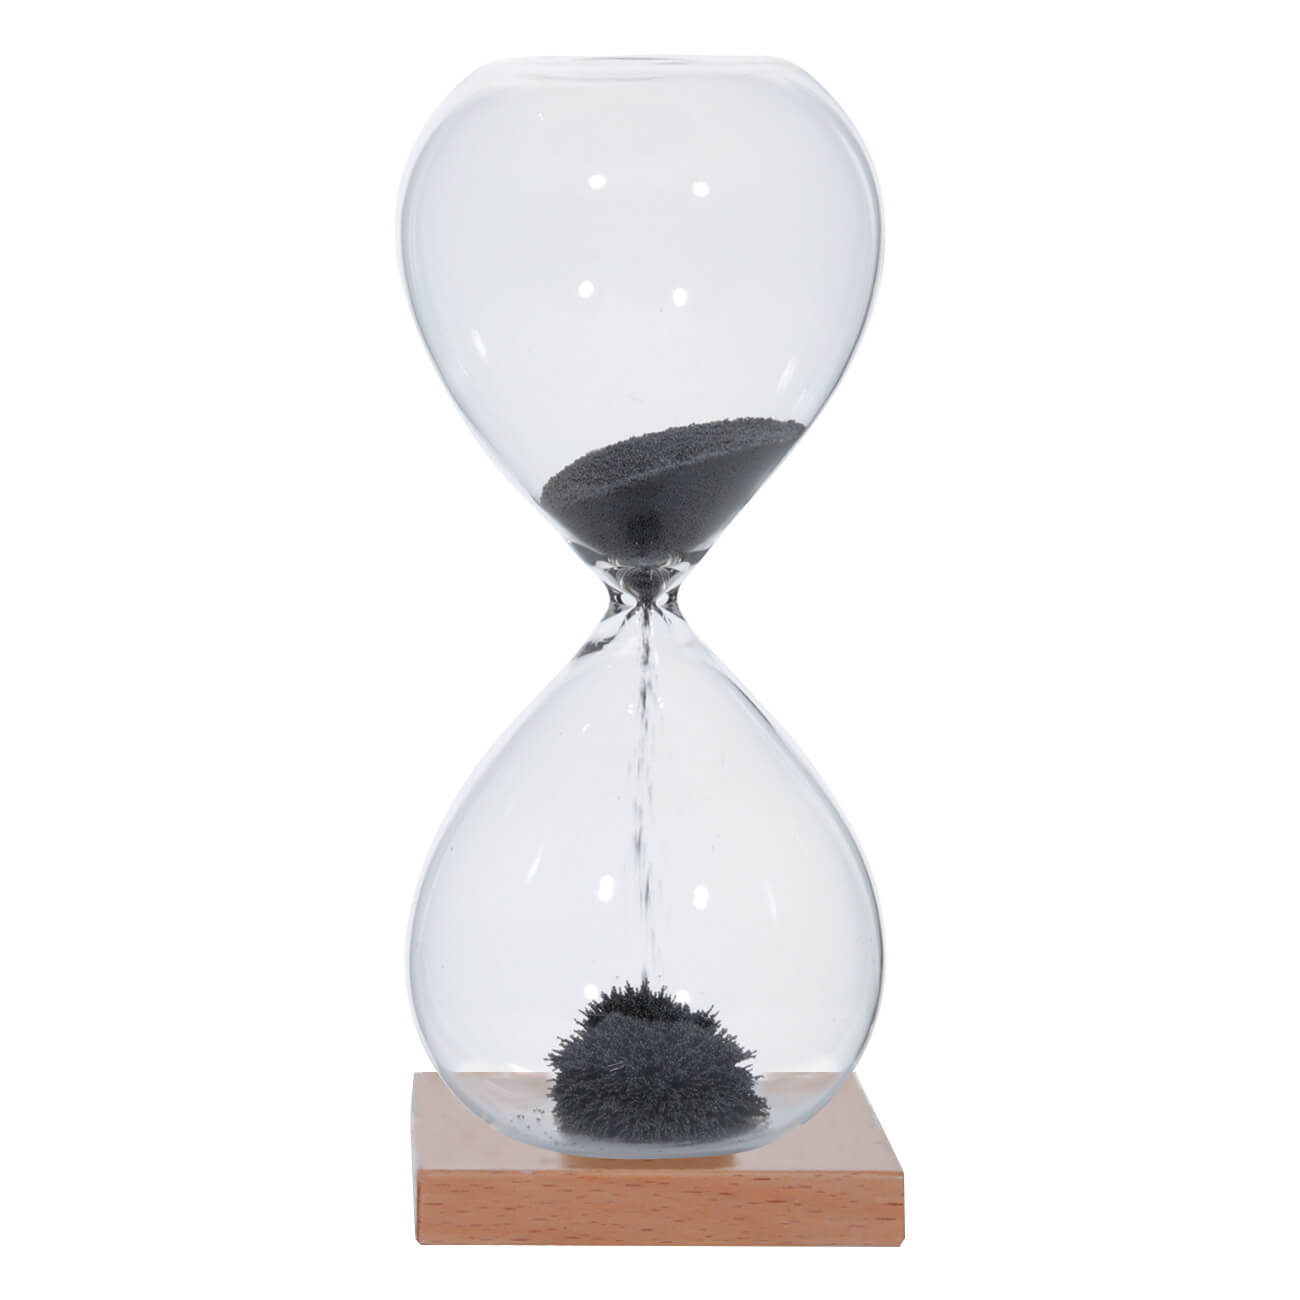 Kuchenland Часы песочные, 16 см, 1 минута, магнитные, на подставке, стекло/дерево, серые, Sand time нарды магнитные поле 20 × 20 см в коробке